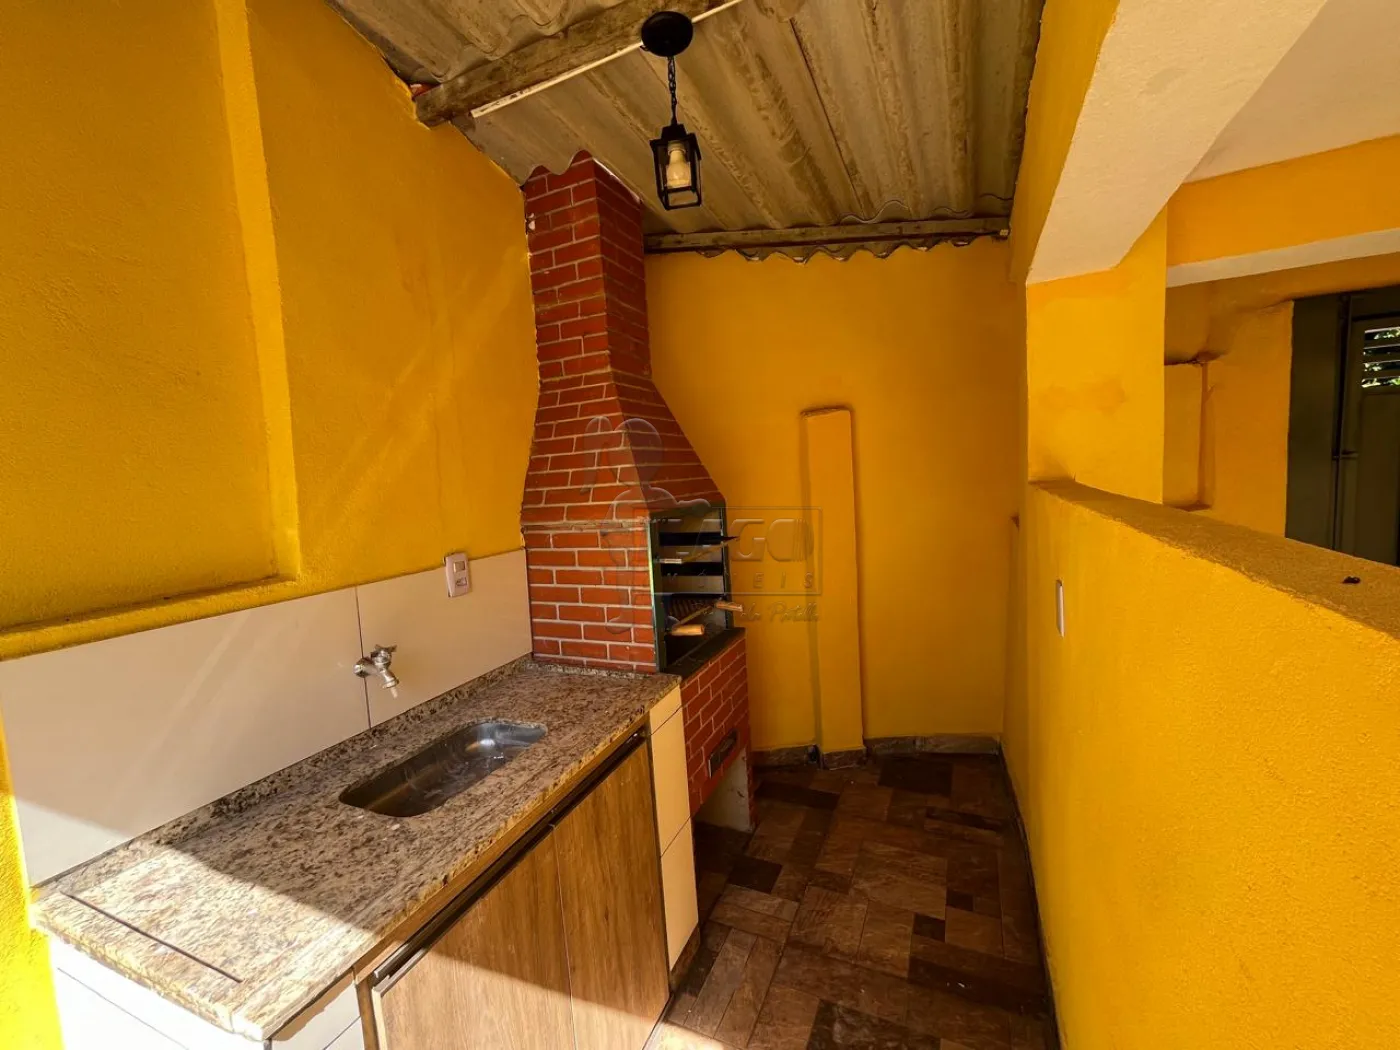 Comprar Casa / Padrão em Ribeirão Preto R$ 350.000,00 - Foto 1